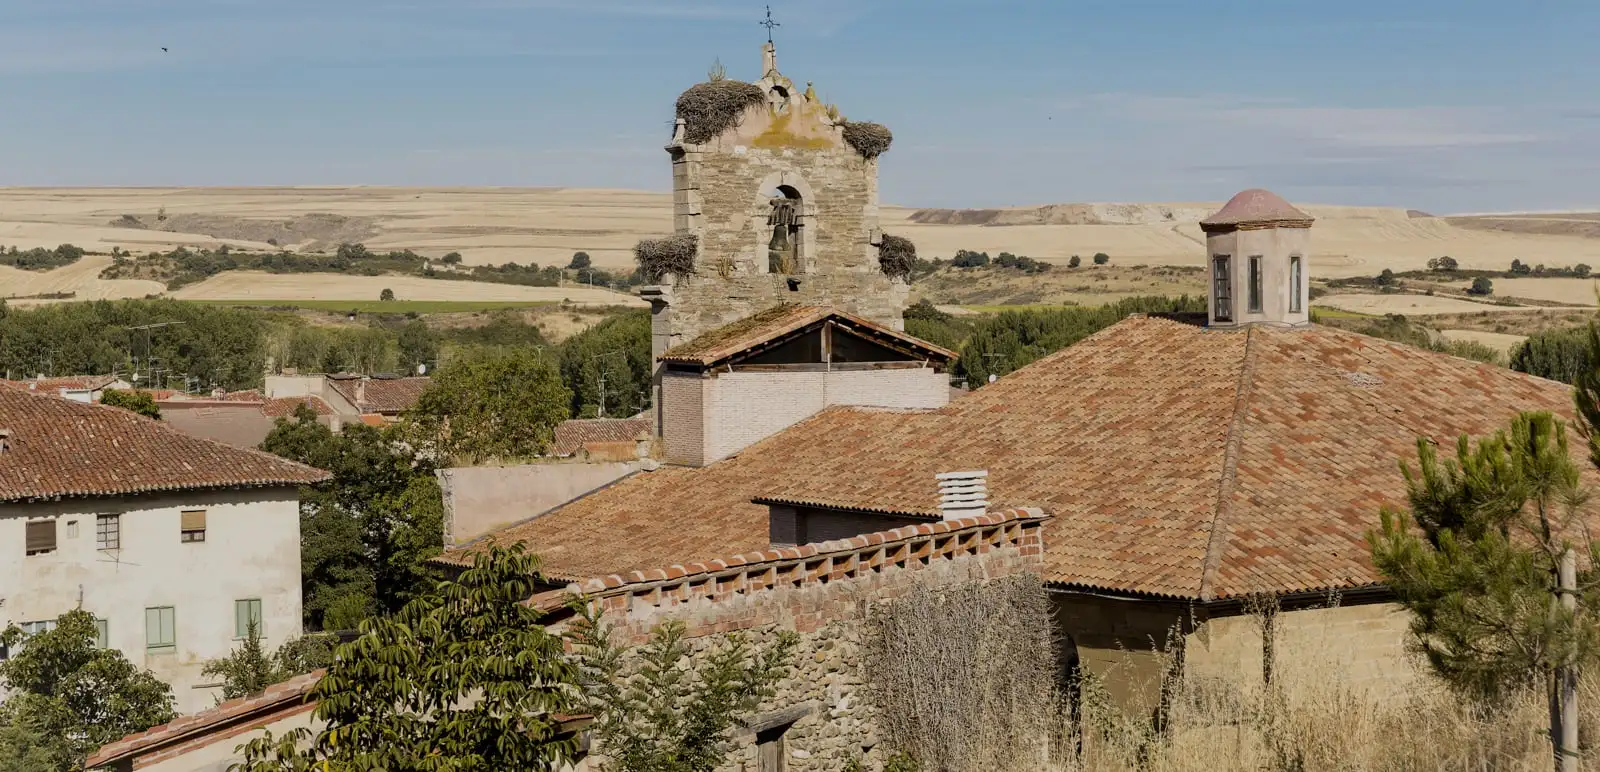 Chapelle sur le Camino Francés en Espagne - JAnastacio - AdobeStock